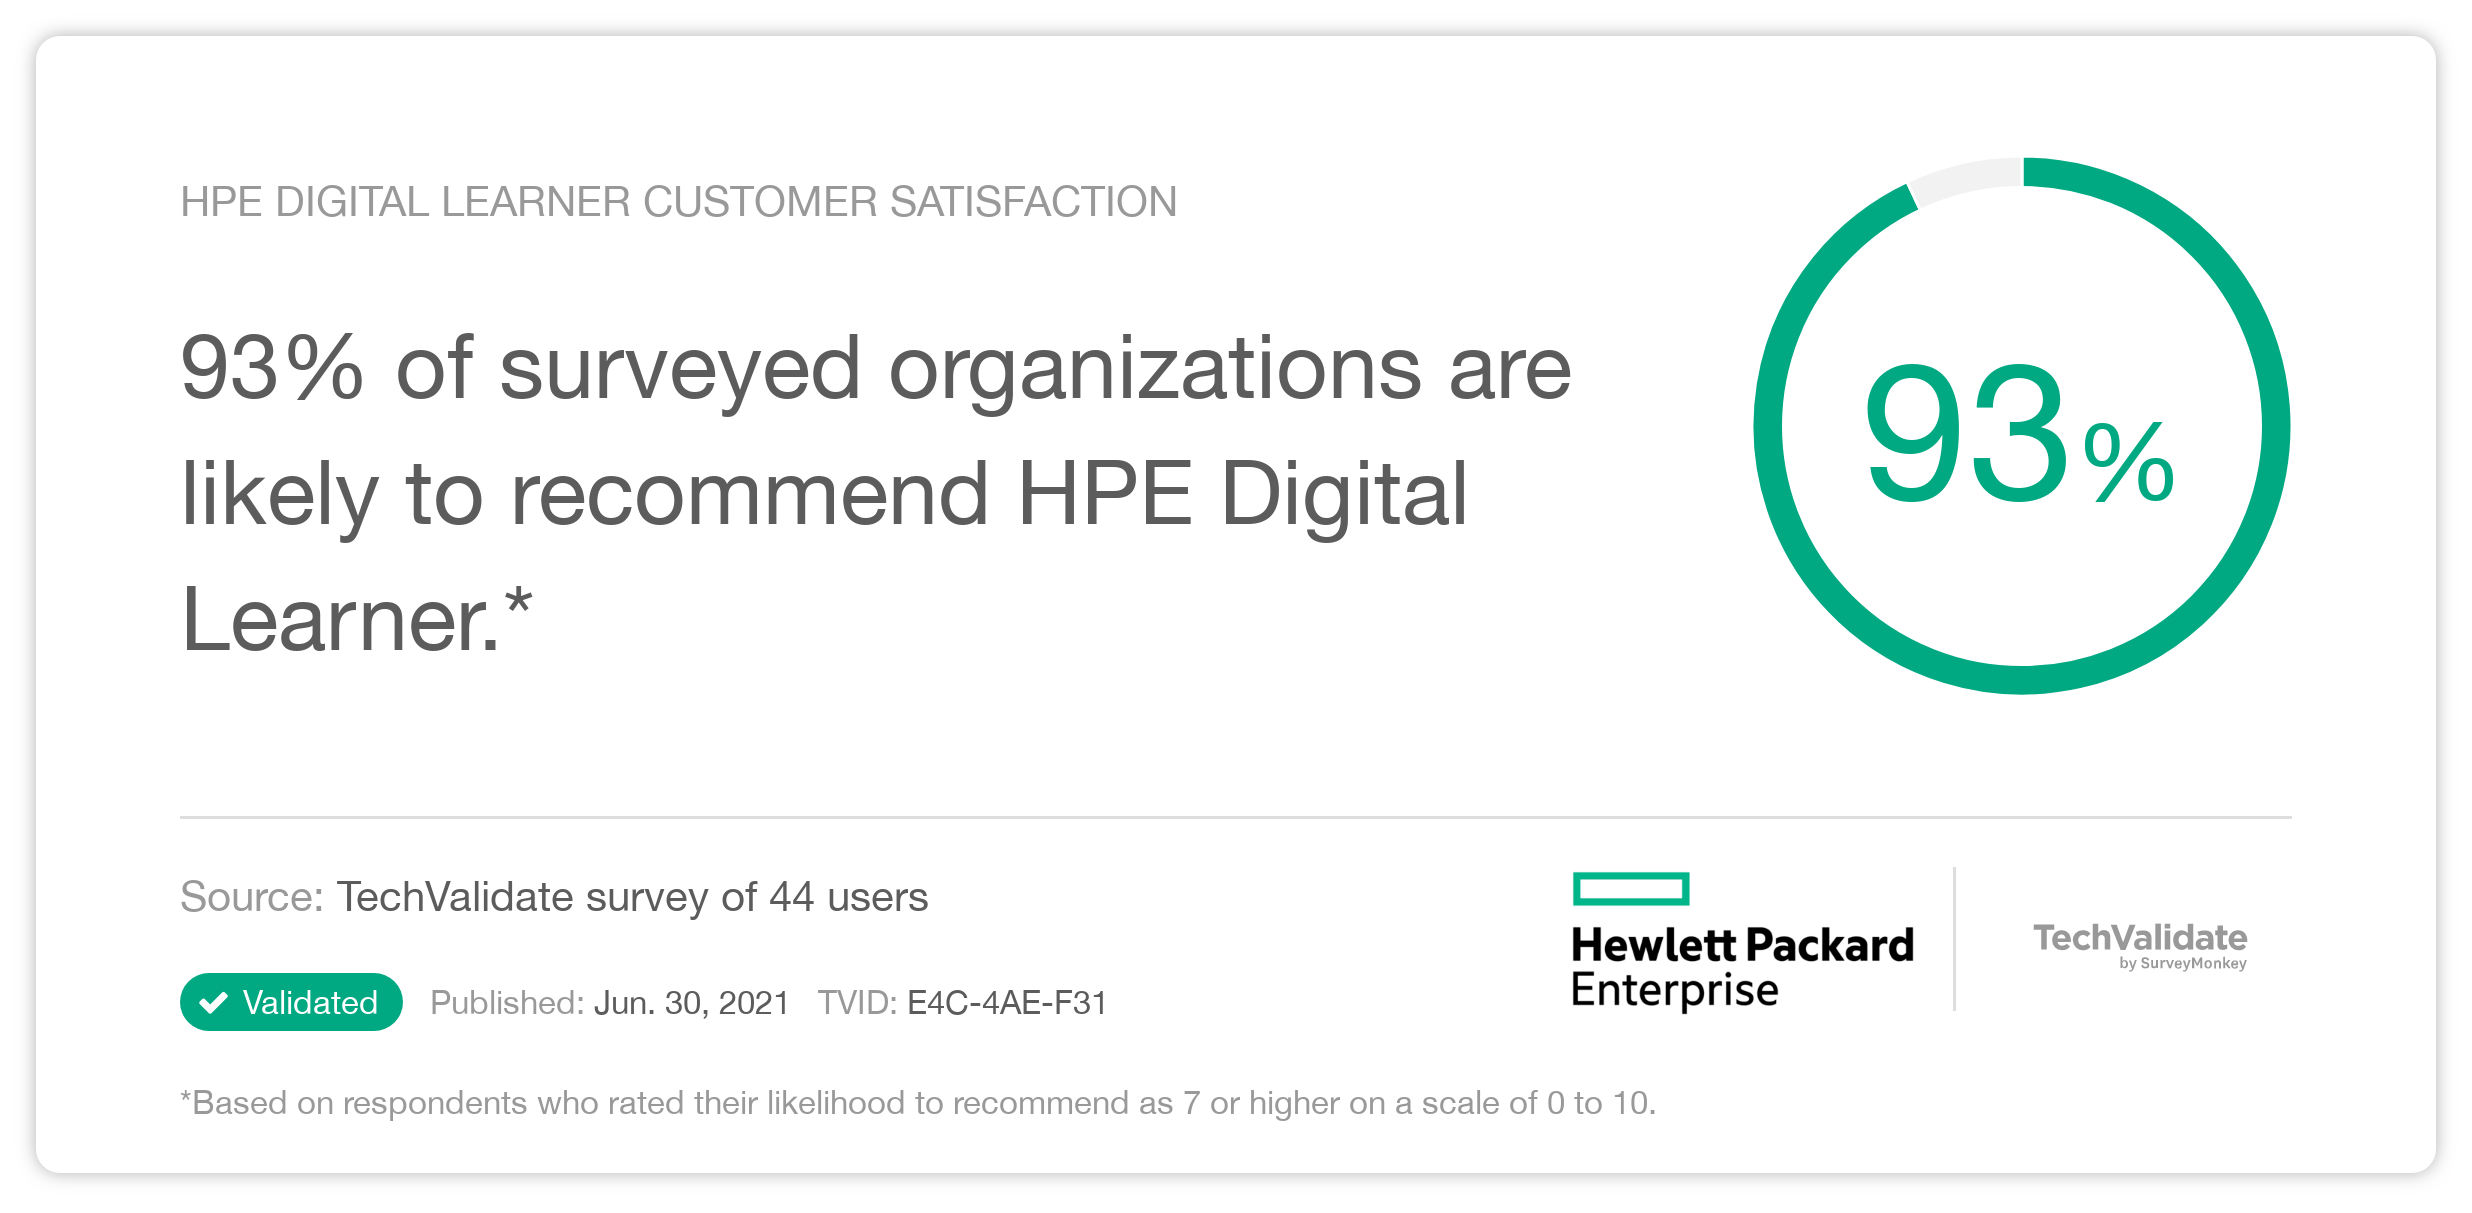 HPE Digital Learner Customer Satisfaction